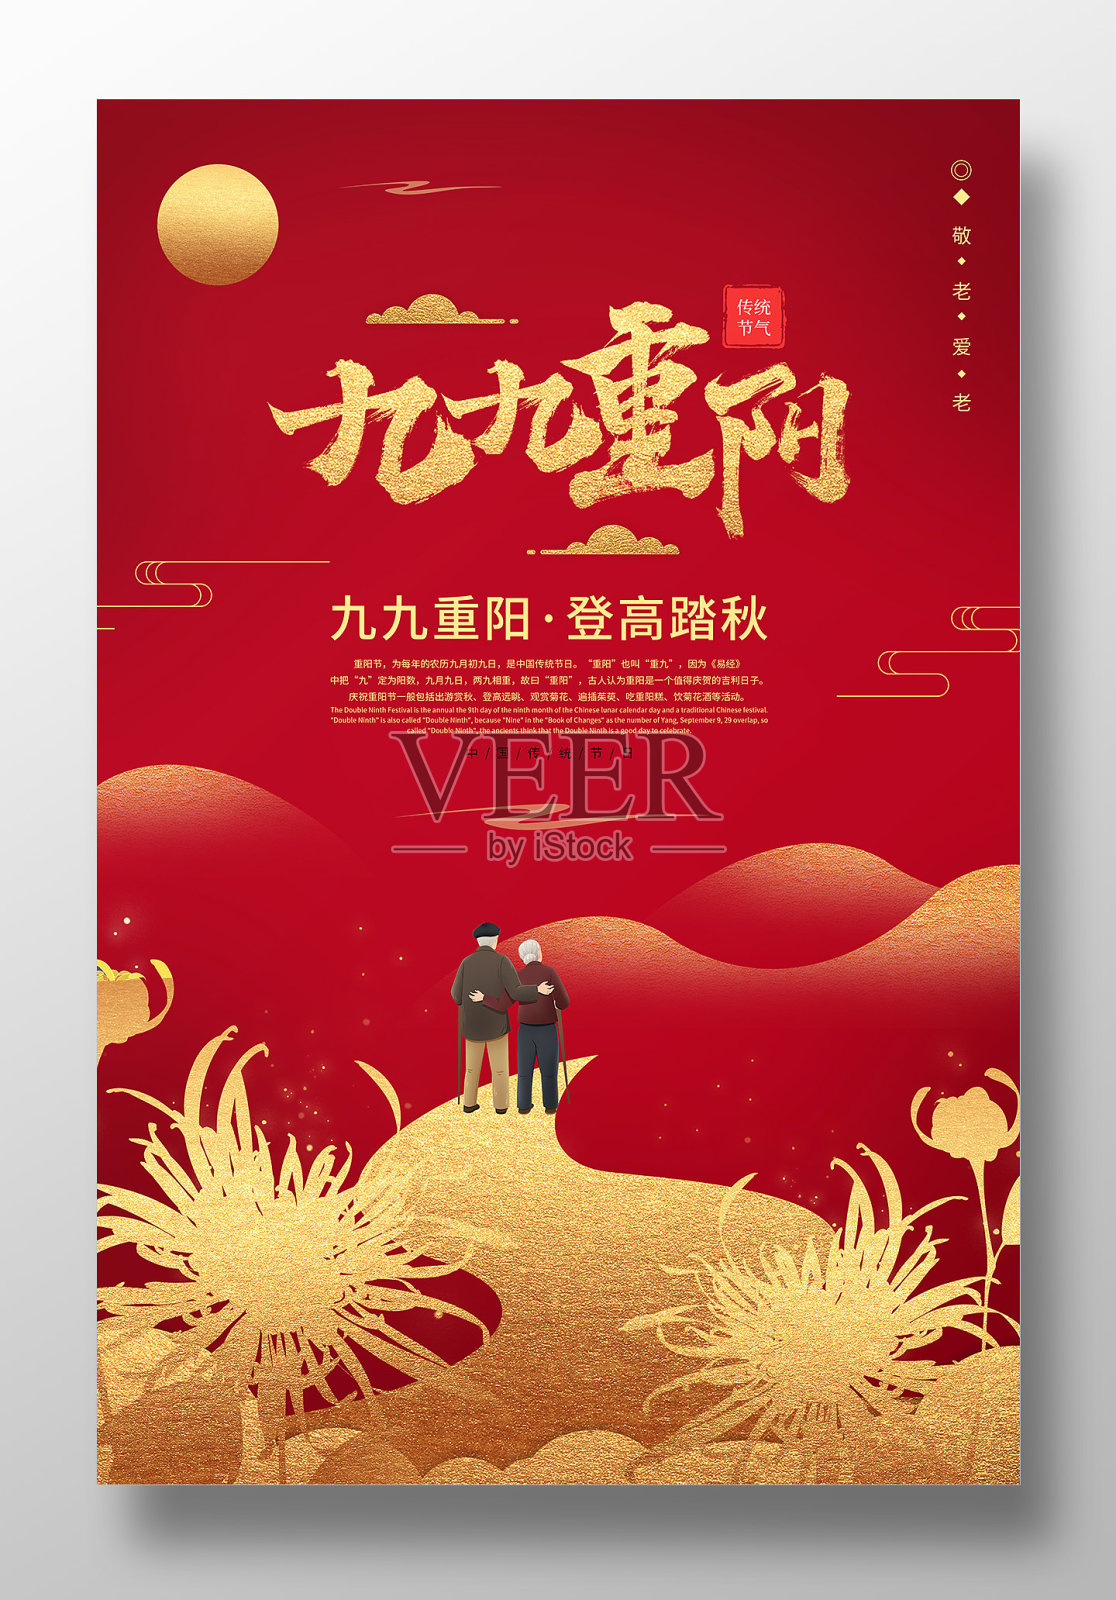 九九重阳节宣传海报设计设计模板素材